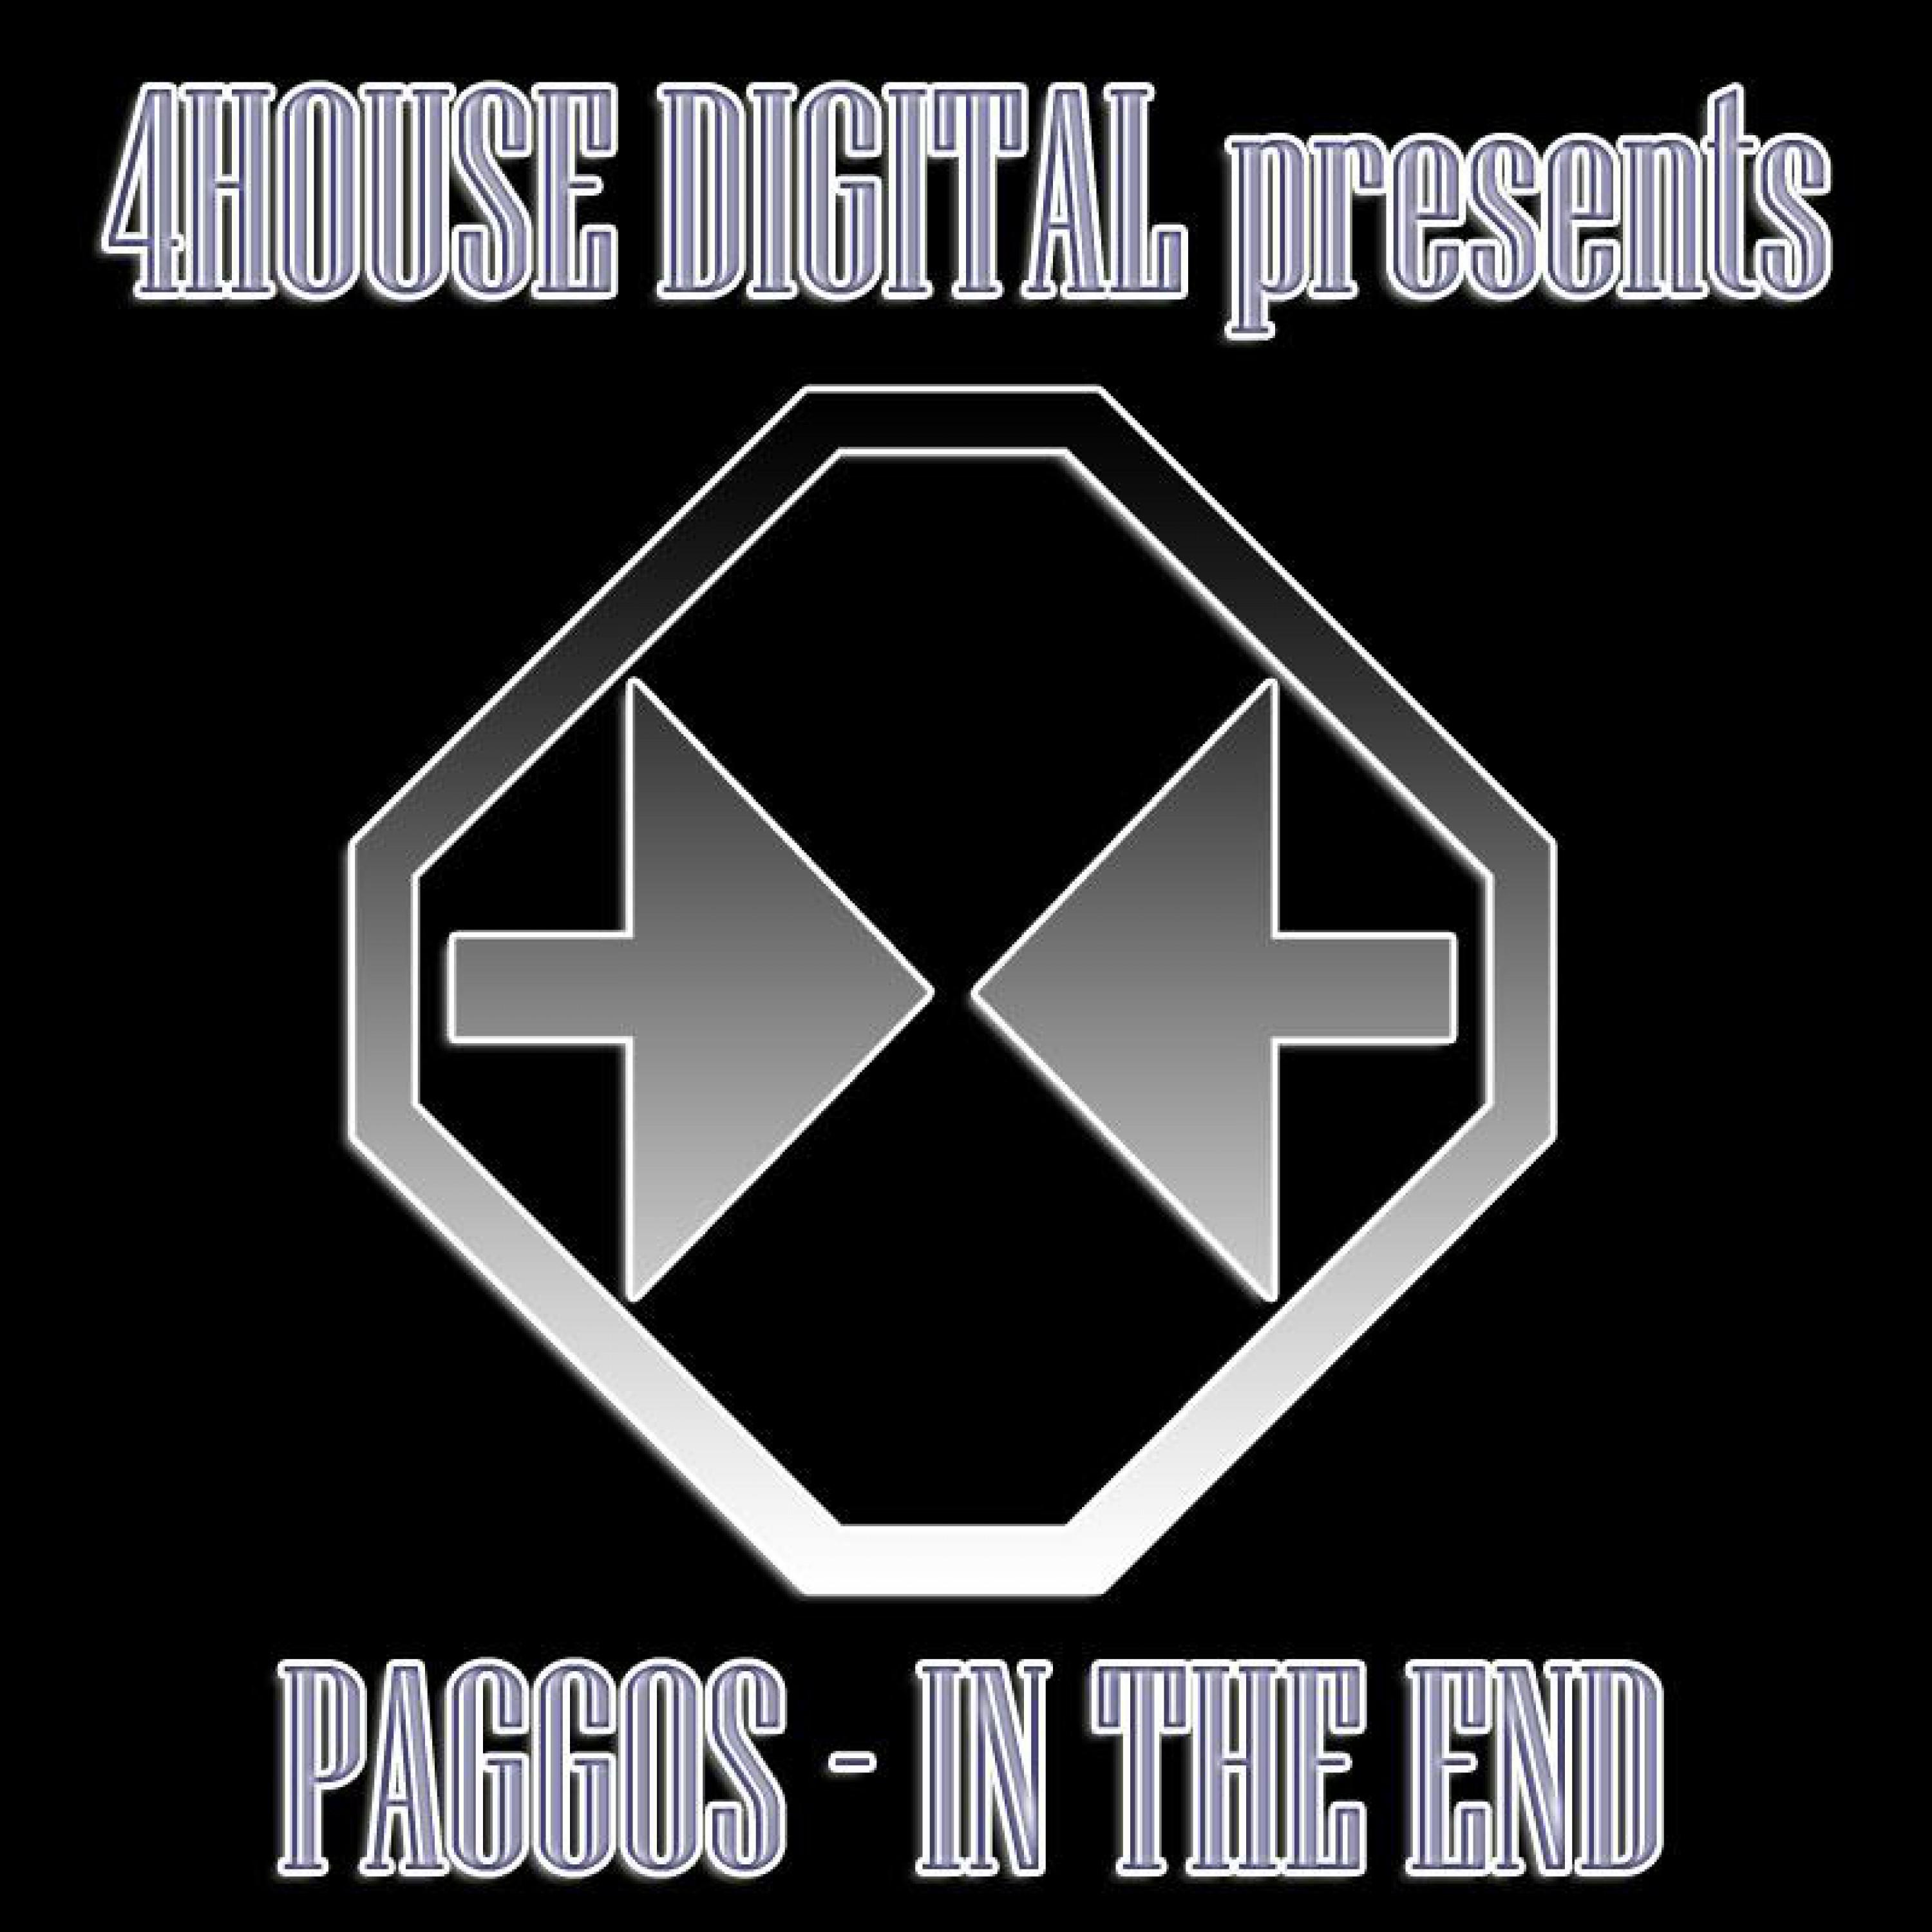 Paggos - Elaine (Original Mix)